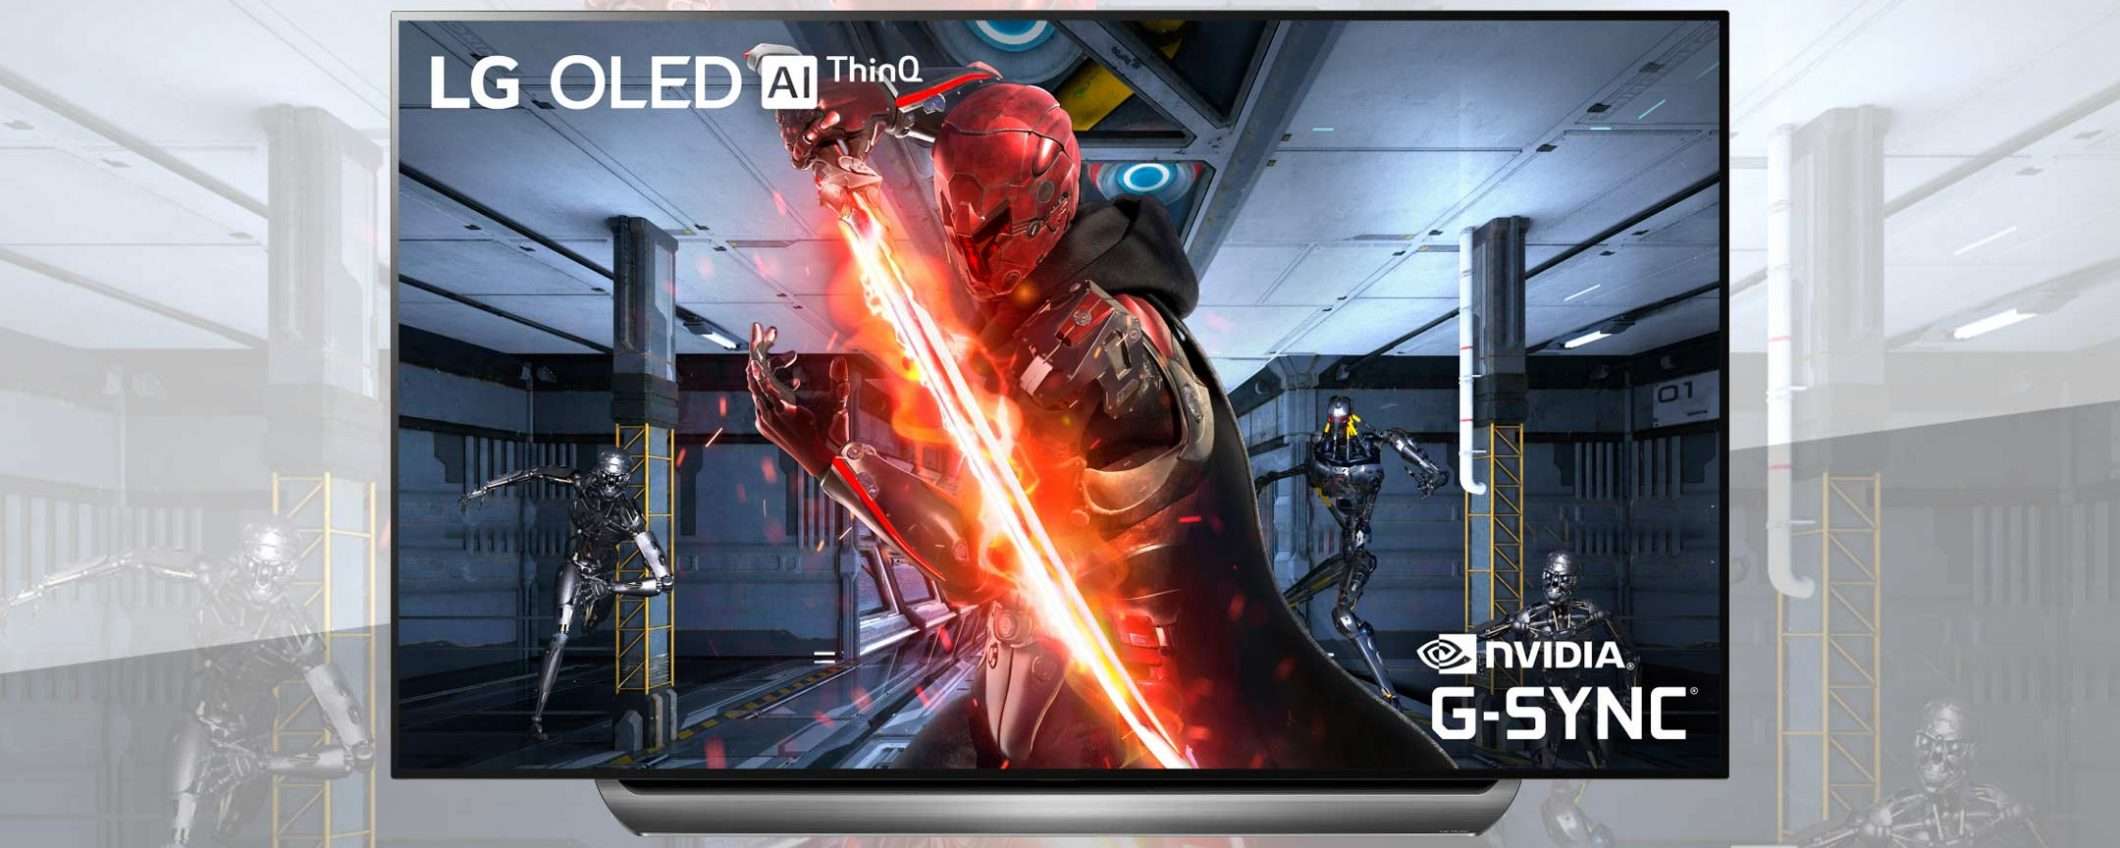 NVIDIA G-SYNC arriva sui televisori LG OLED 2019